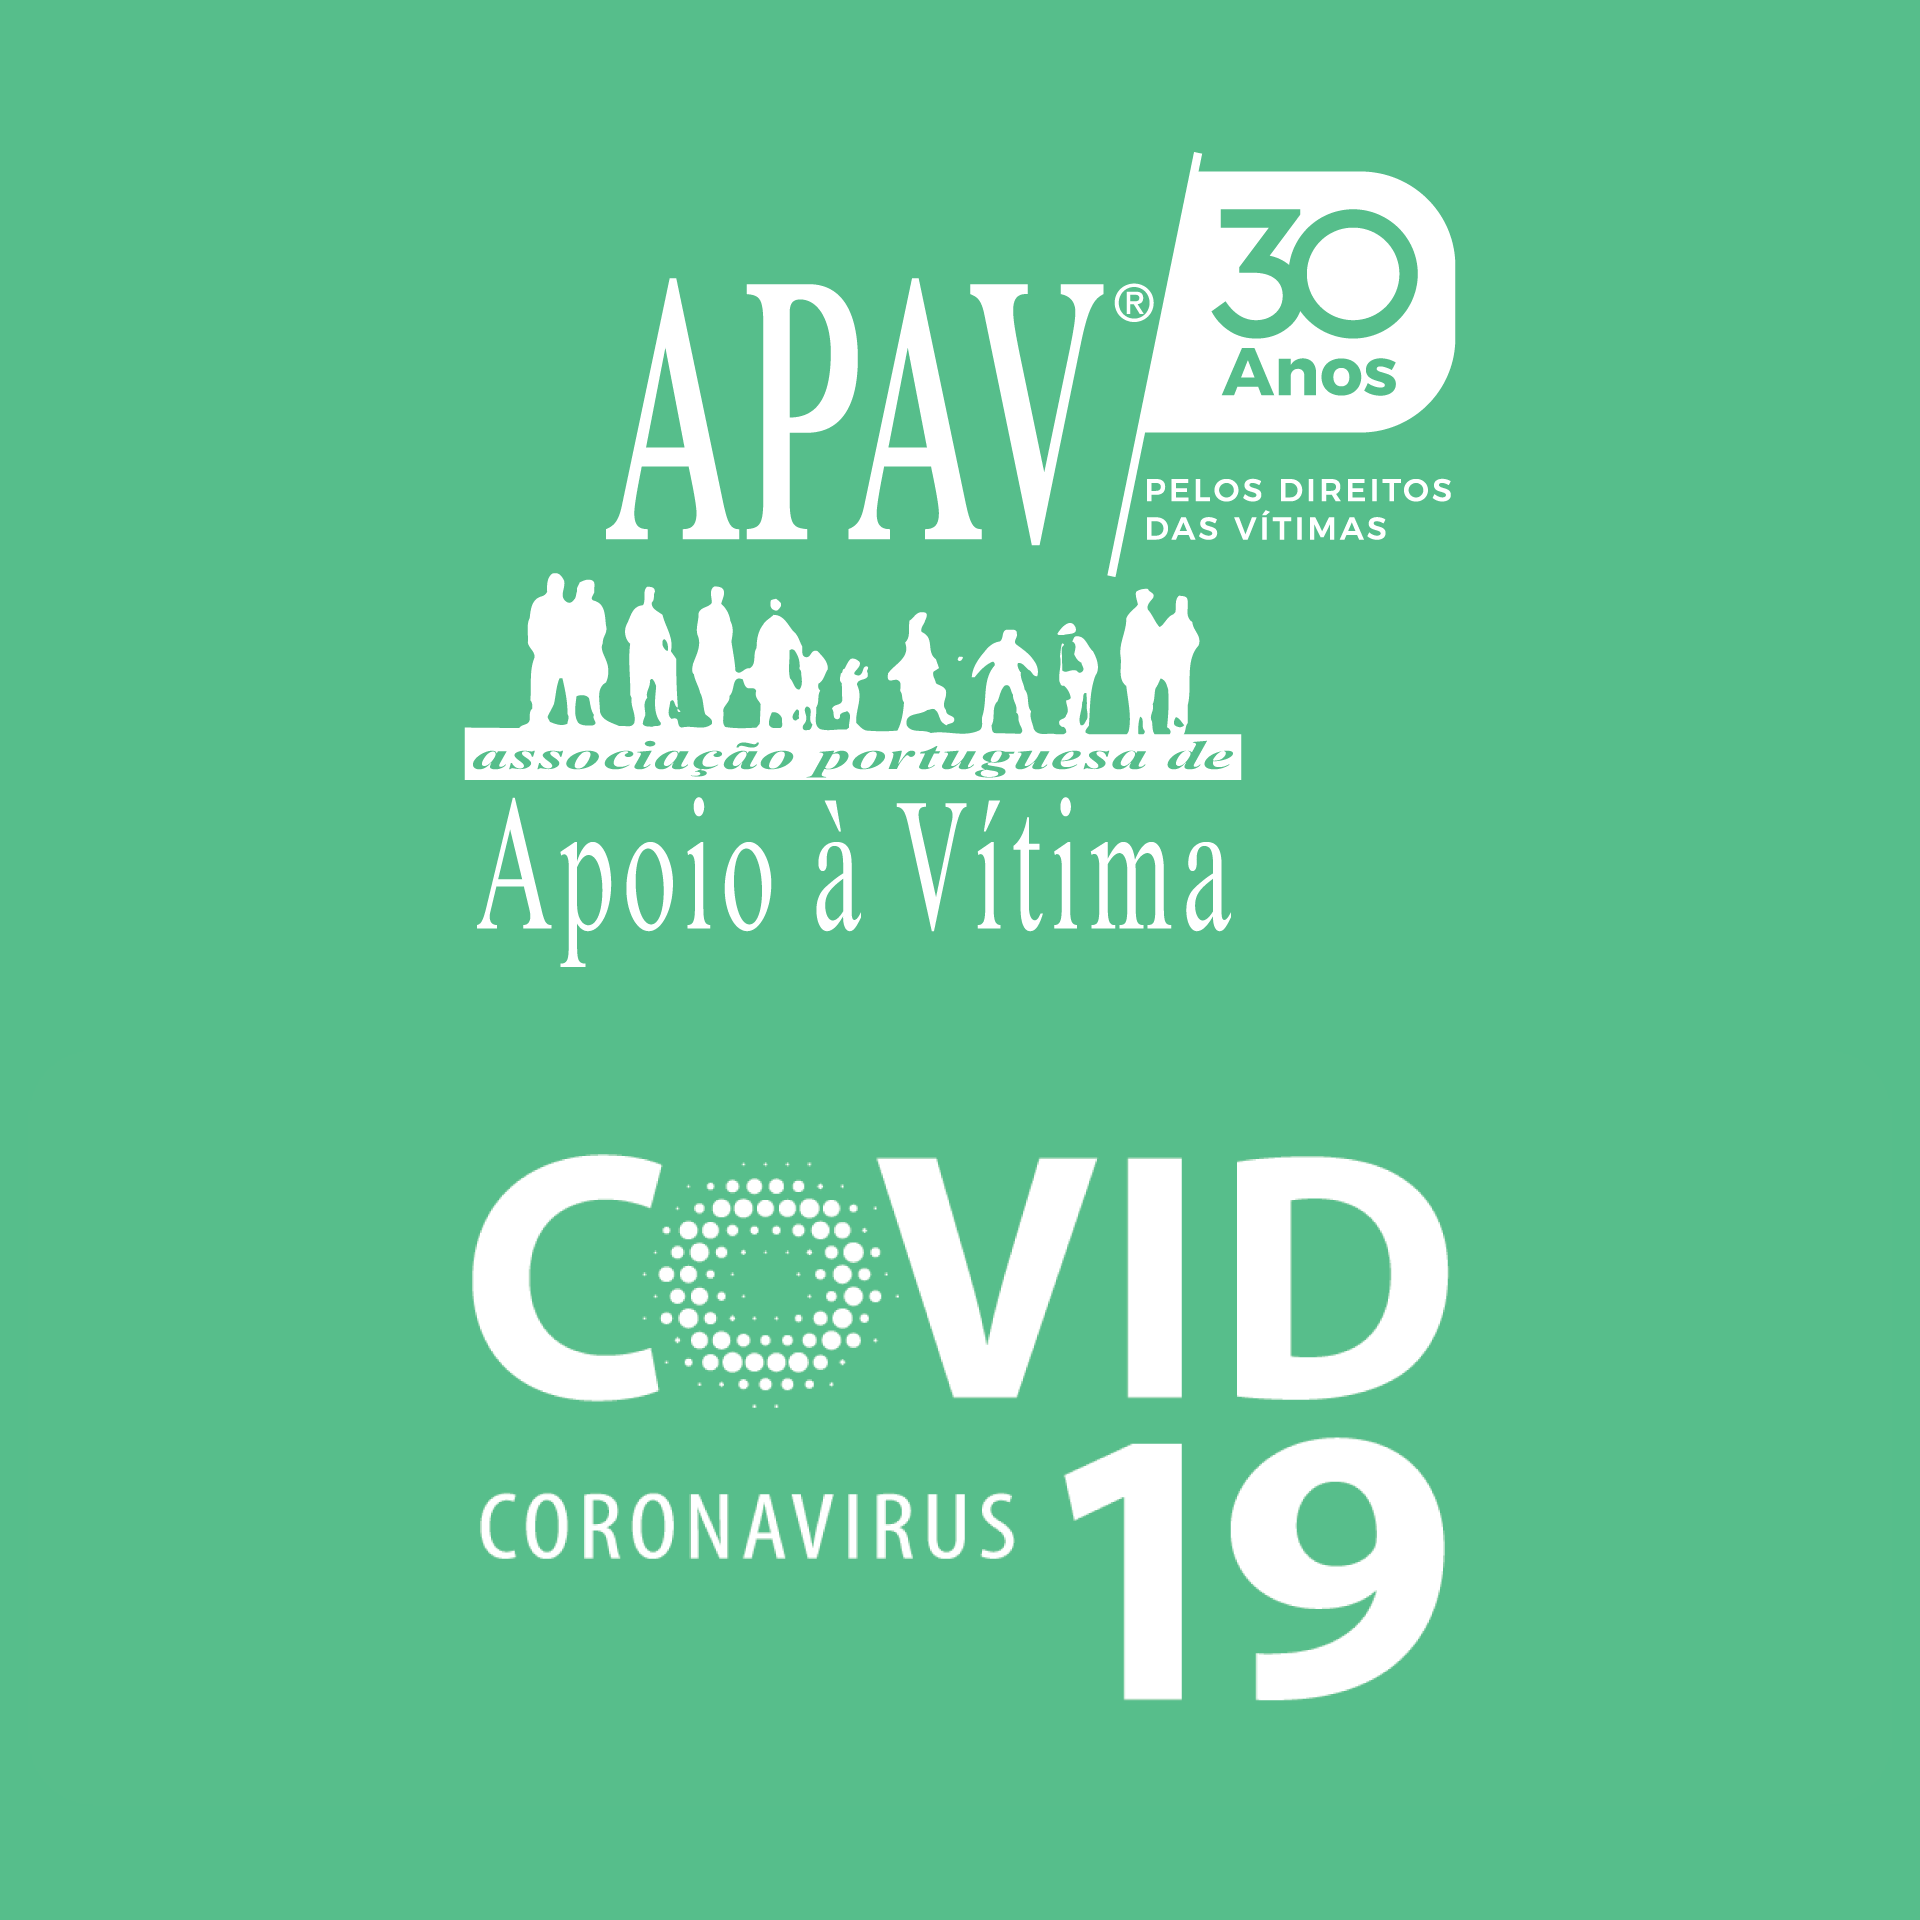 APAV COVID19 